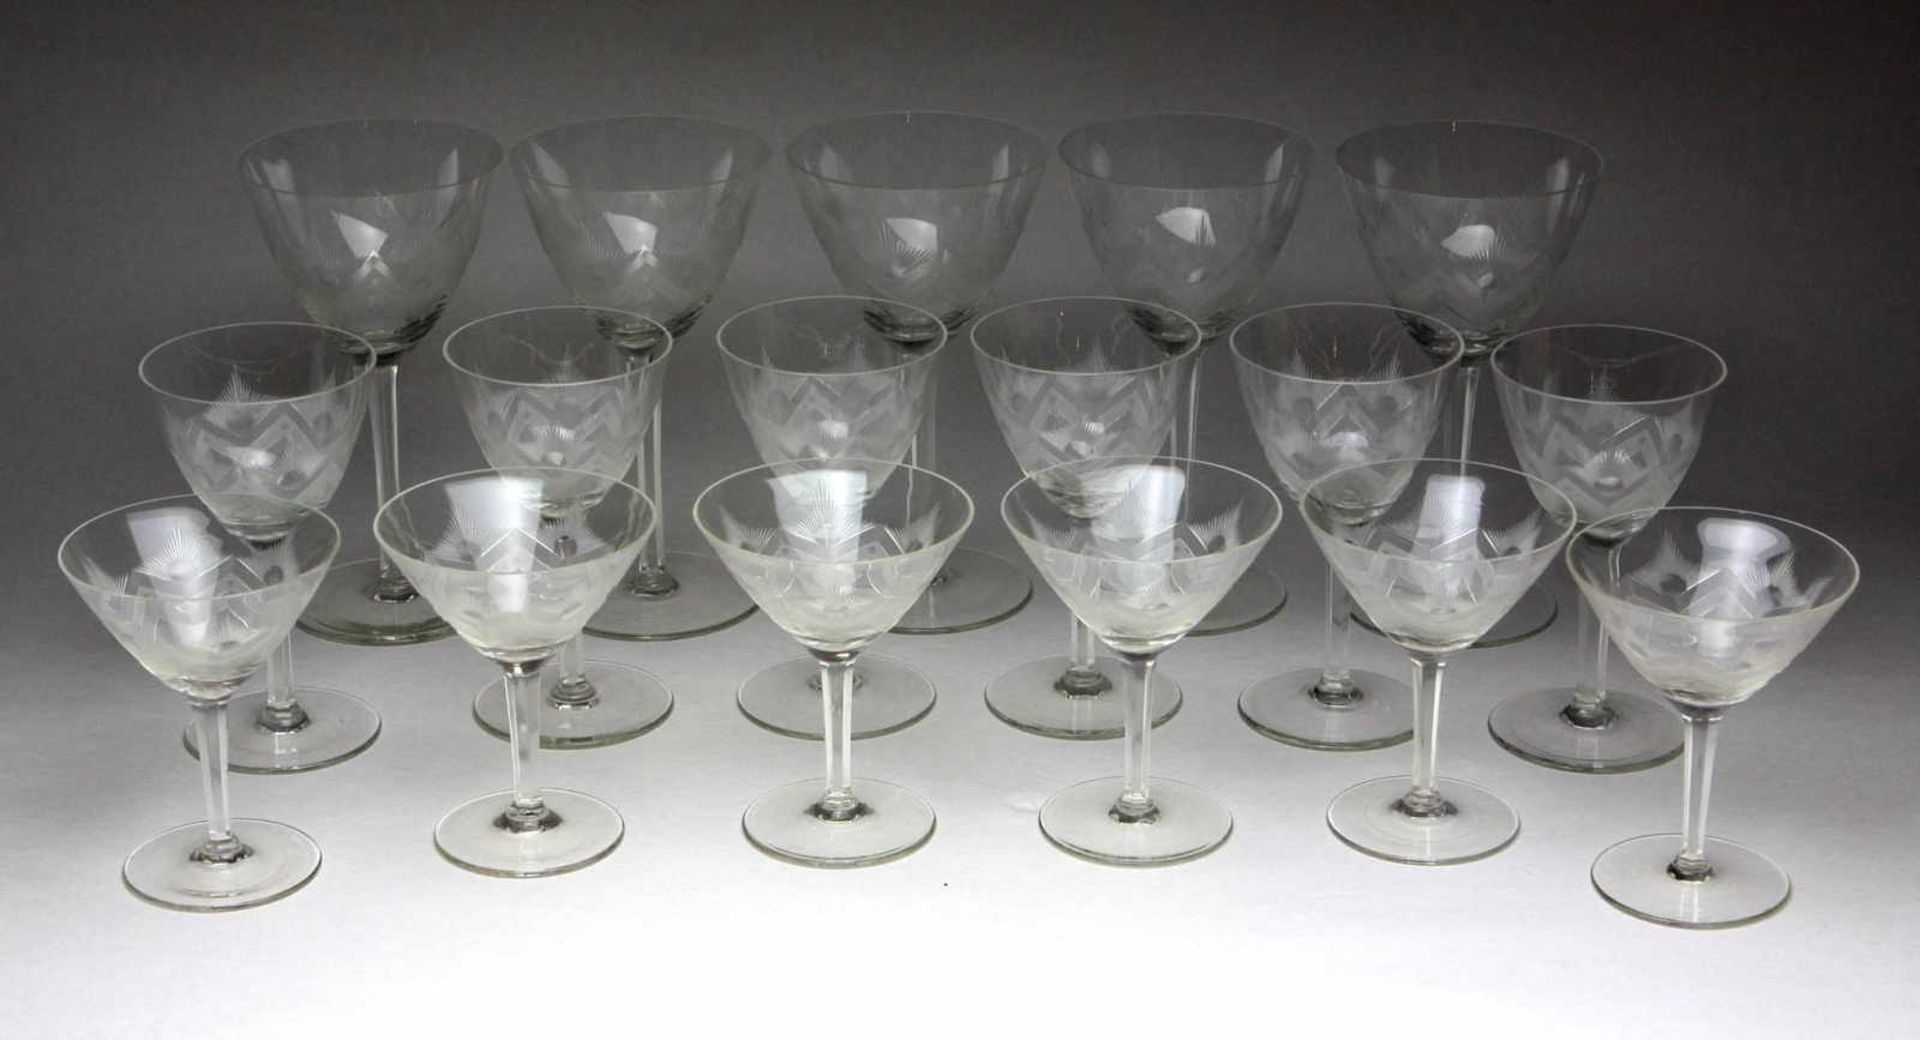 3 Kelchglas Sätzefarbloses Glas, konische Kuppa mit geometrischem Schliffband im Mattschnitt, auf